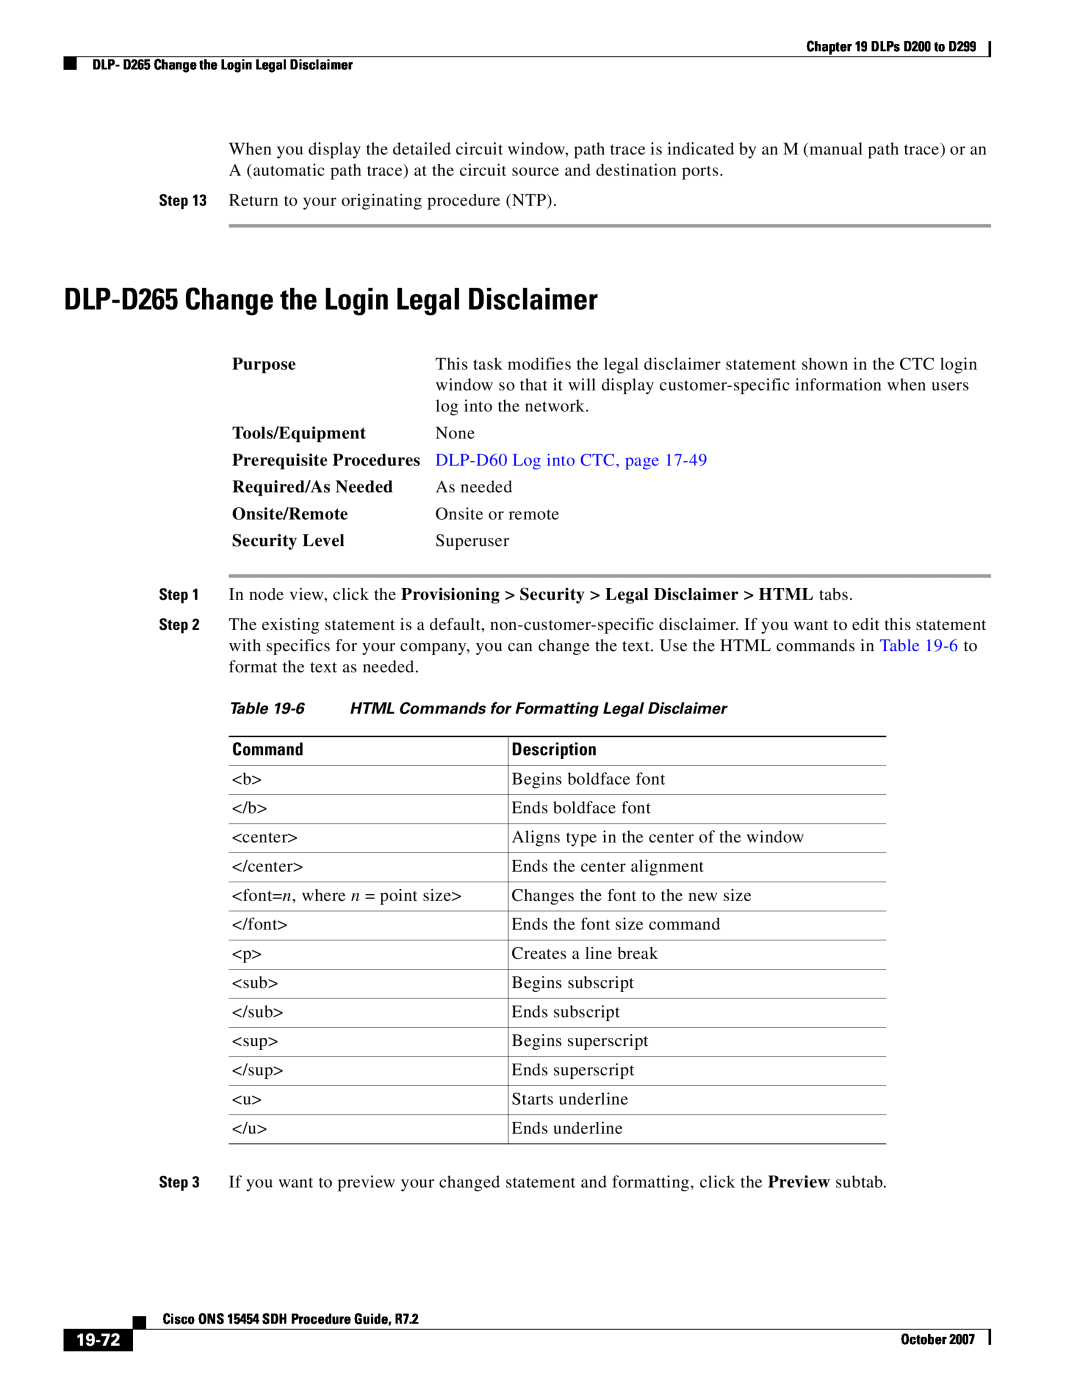 Cisco Systems D200 DLP-D265 Change the Login Legal Disclaimer, Command, 19-72, DLP-D60 Log into CTC, page, Description 